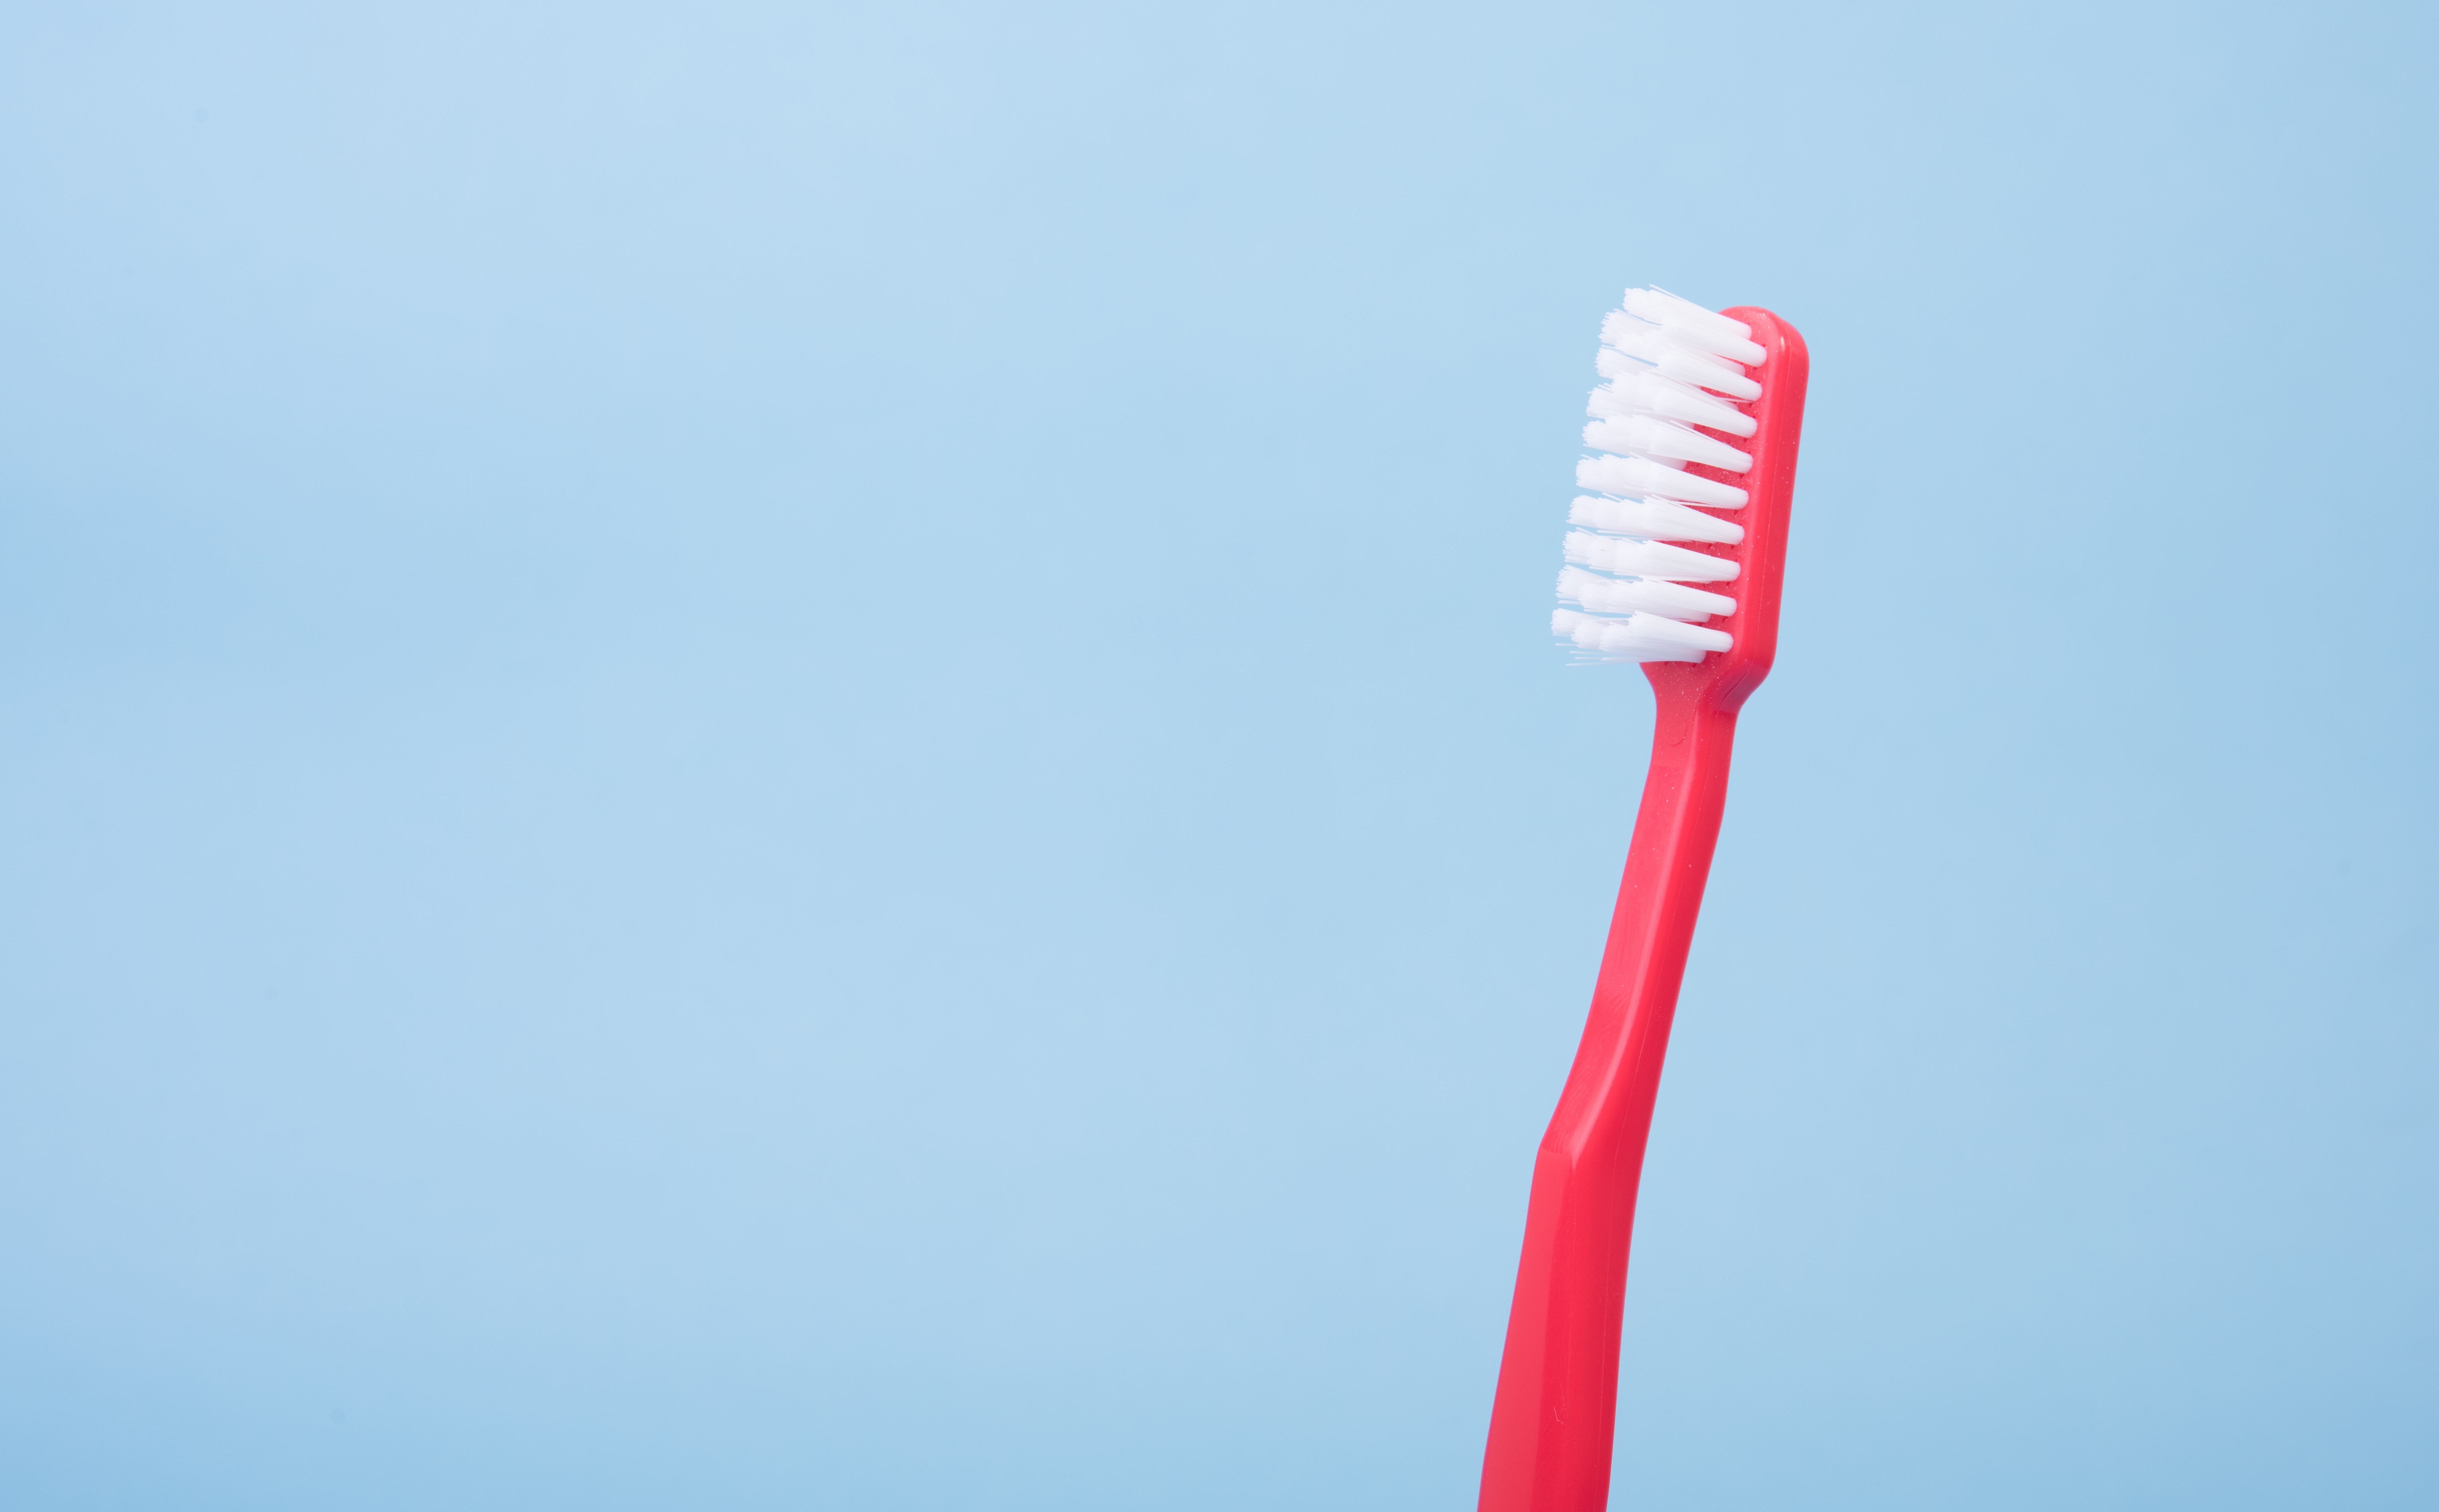 ¿Qué cepillo de dientes es más adecuado para mi? por Morales Cervera. Cepillo de dientes rosa sobre fondo azul.